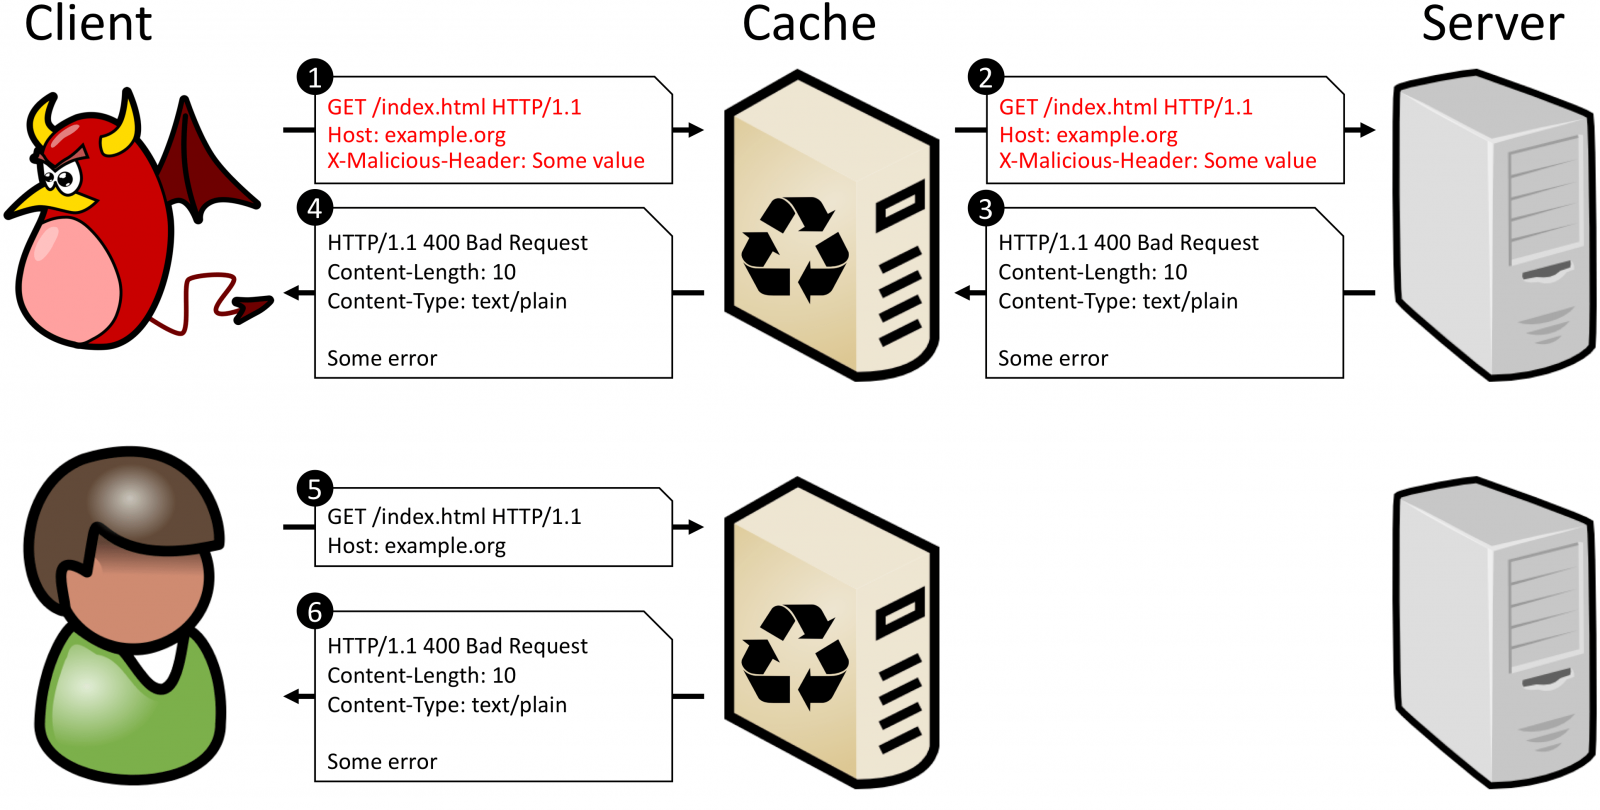 400 client error bad request. Cache poisoning. "Http-cache": ["Error". Атаки на заголовки http..